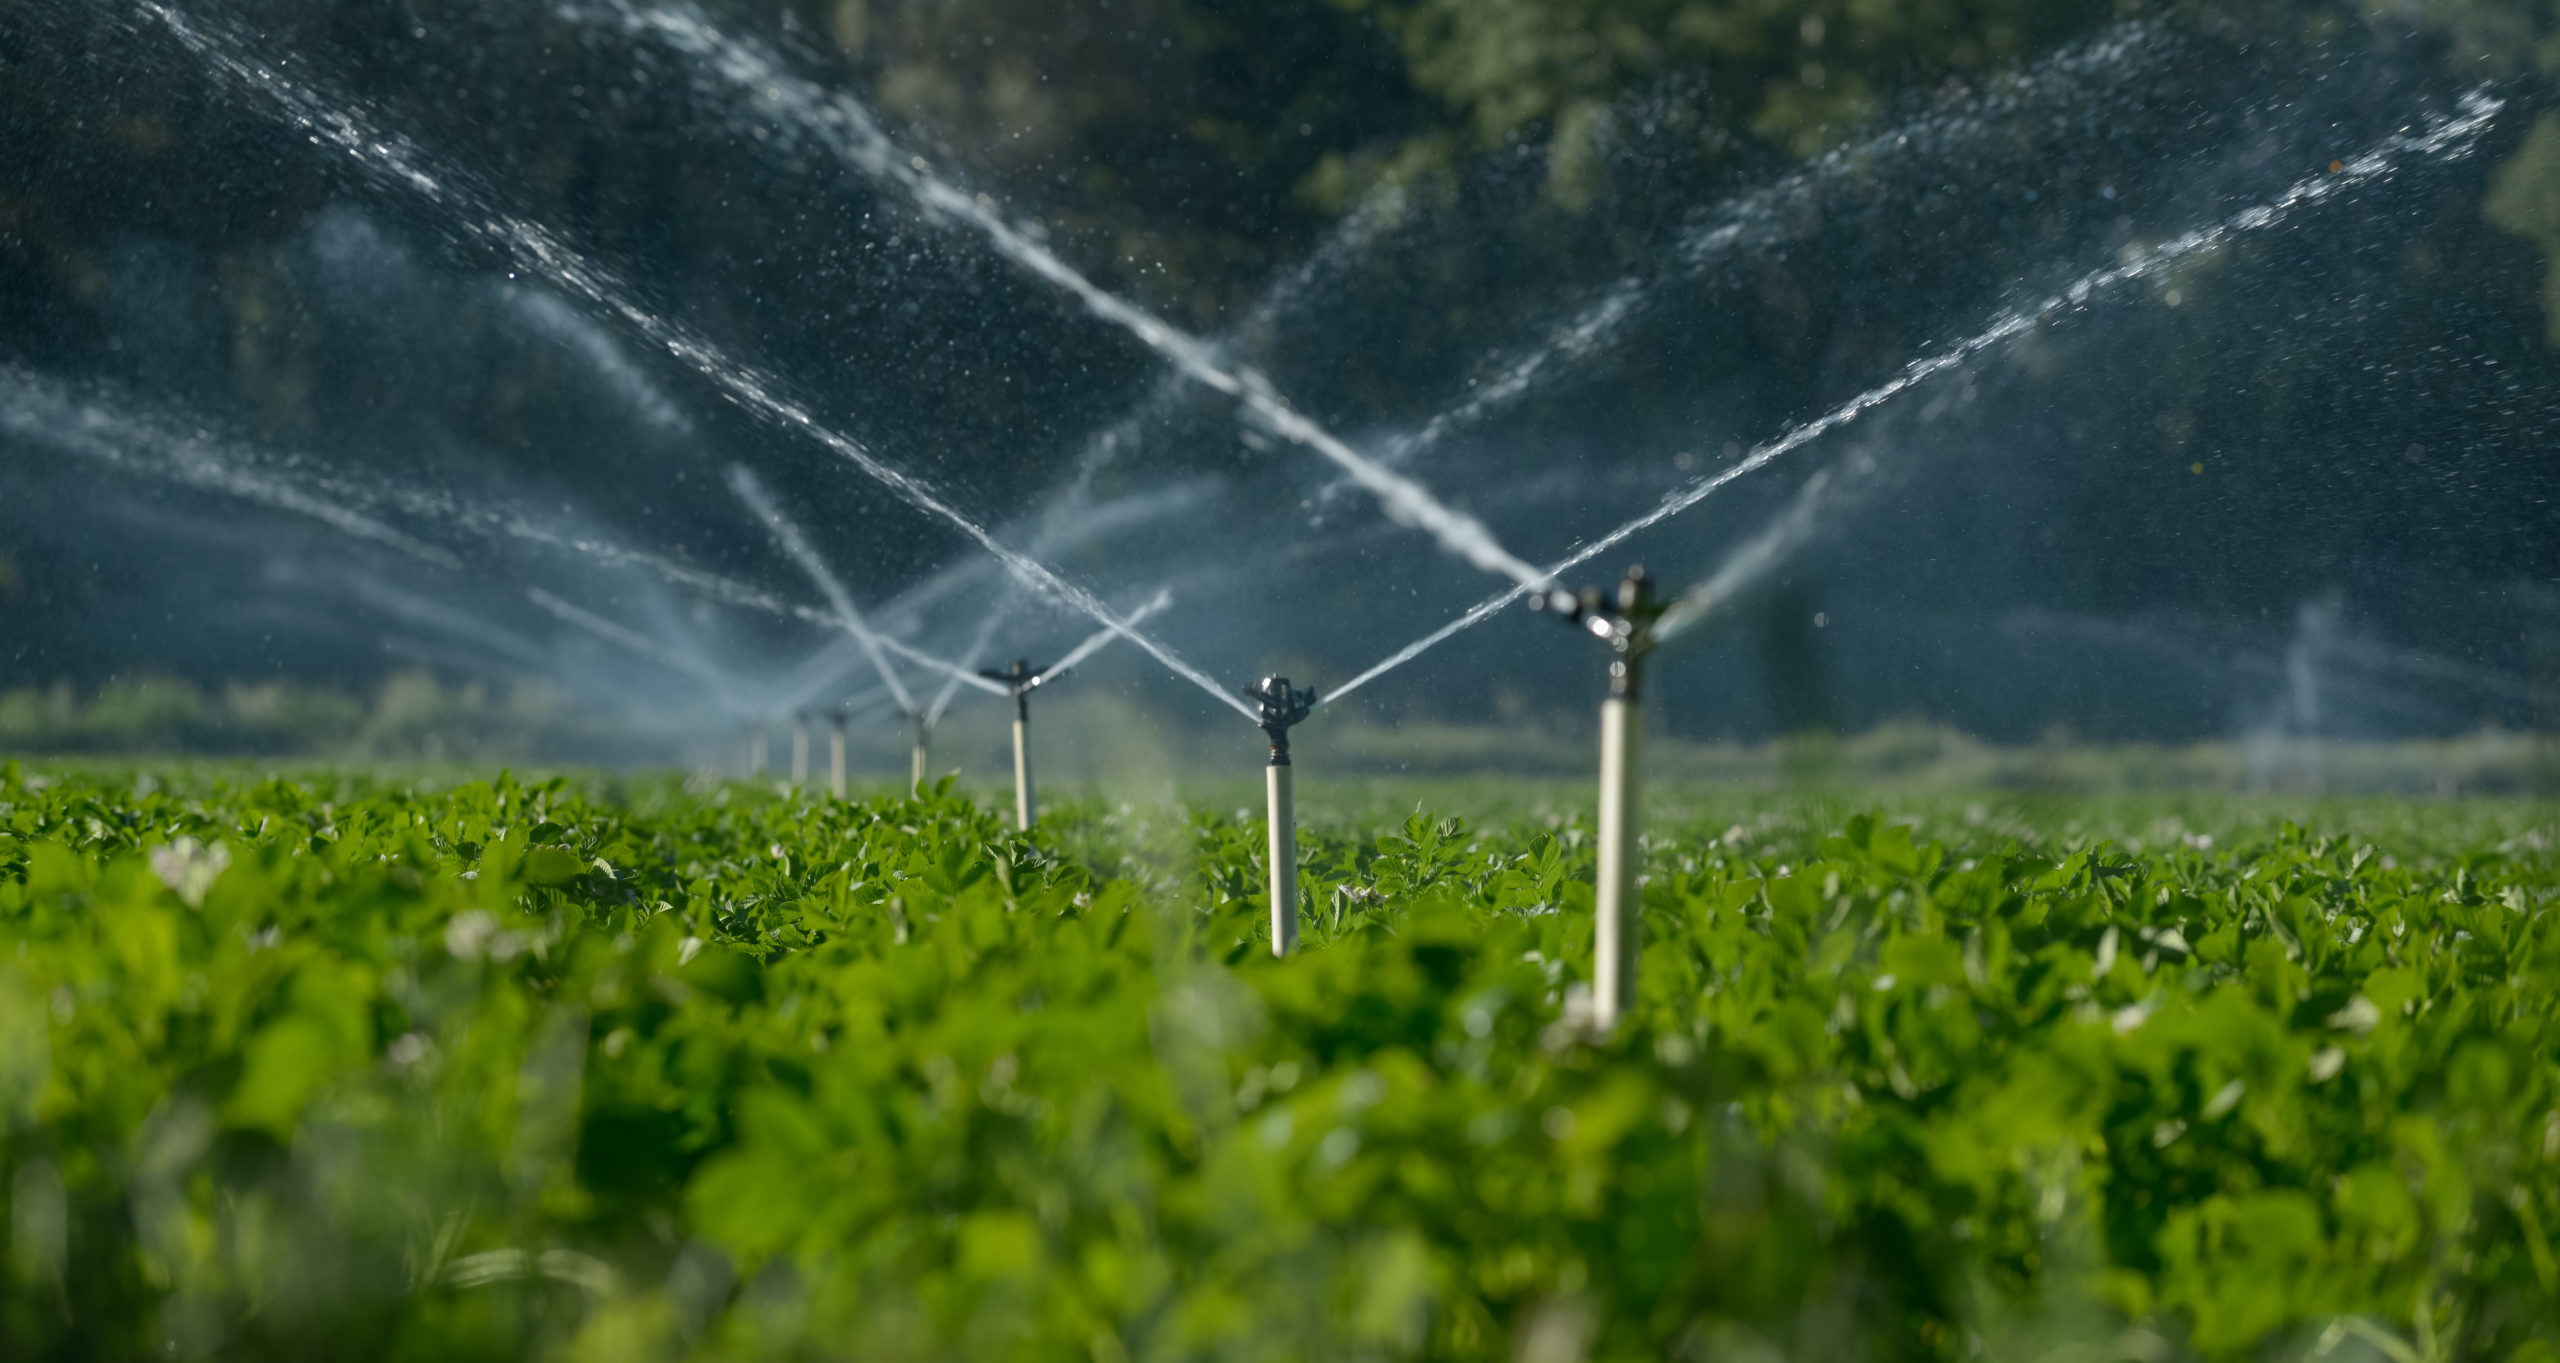 Water sprinklers irrigating a field.